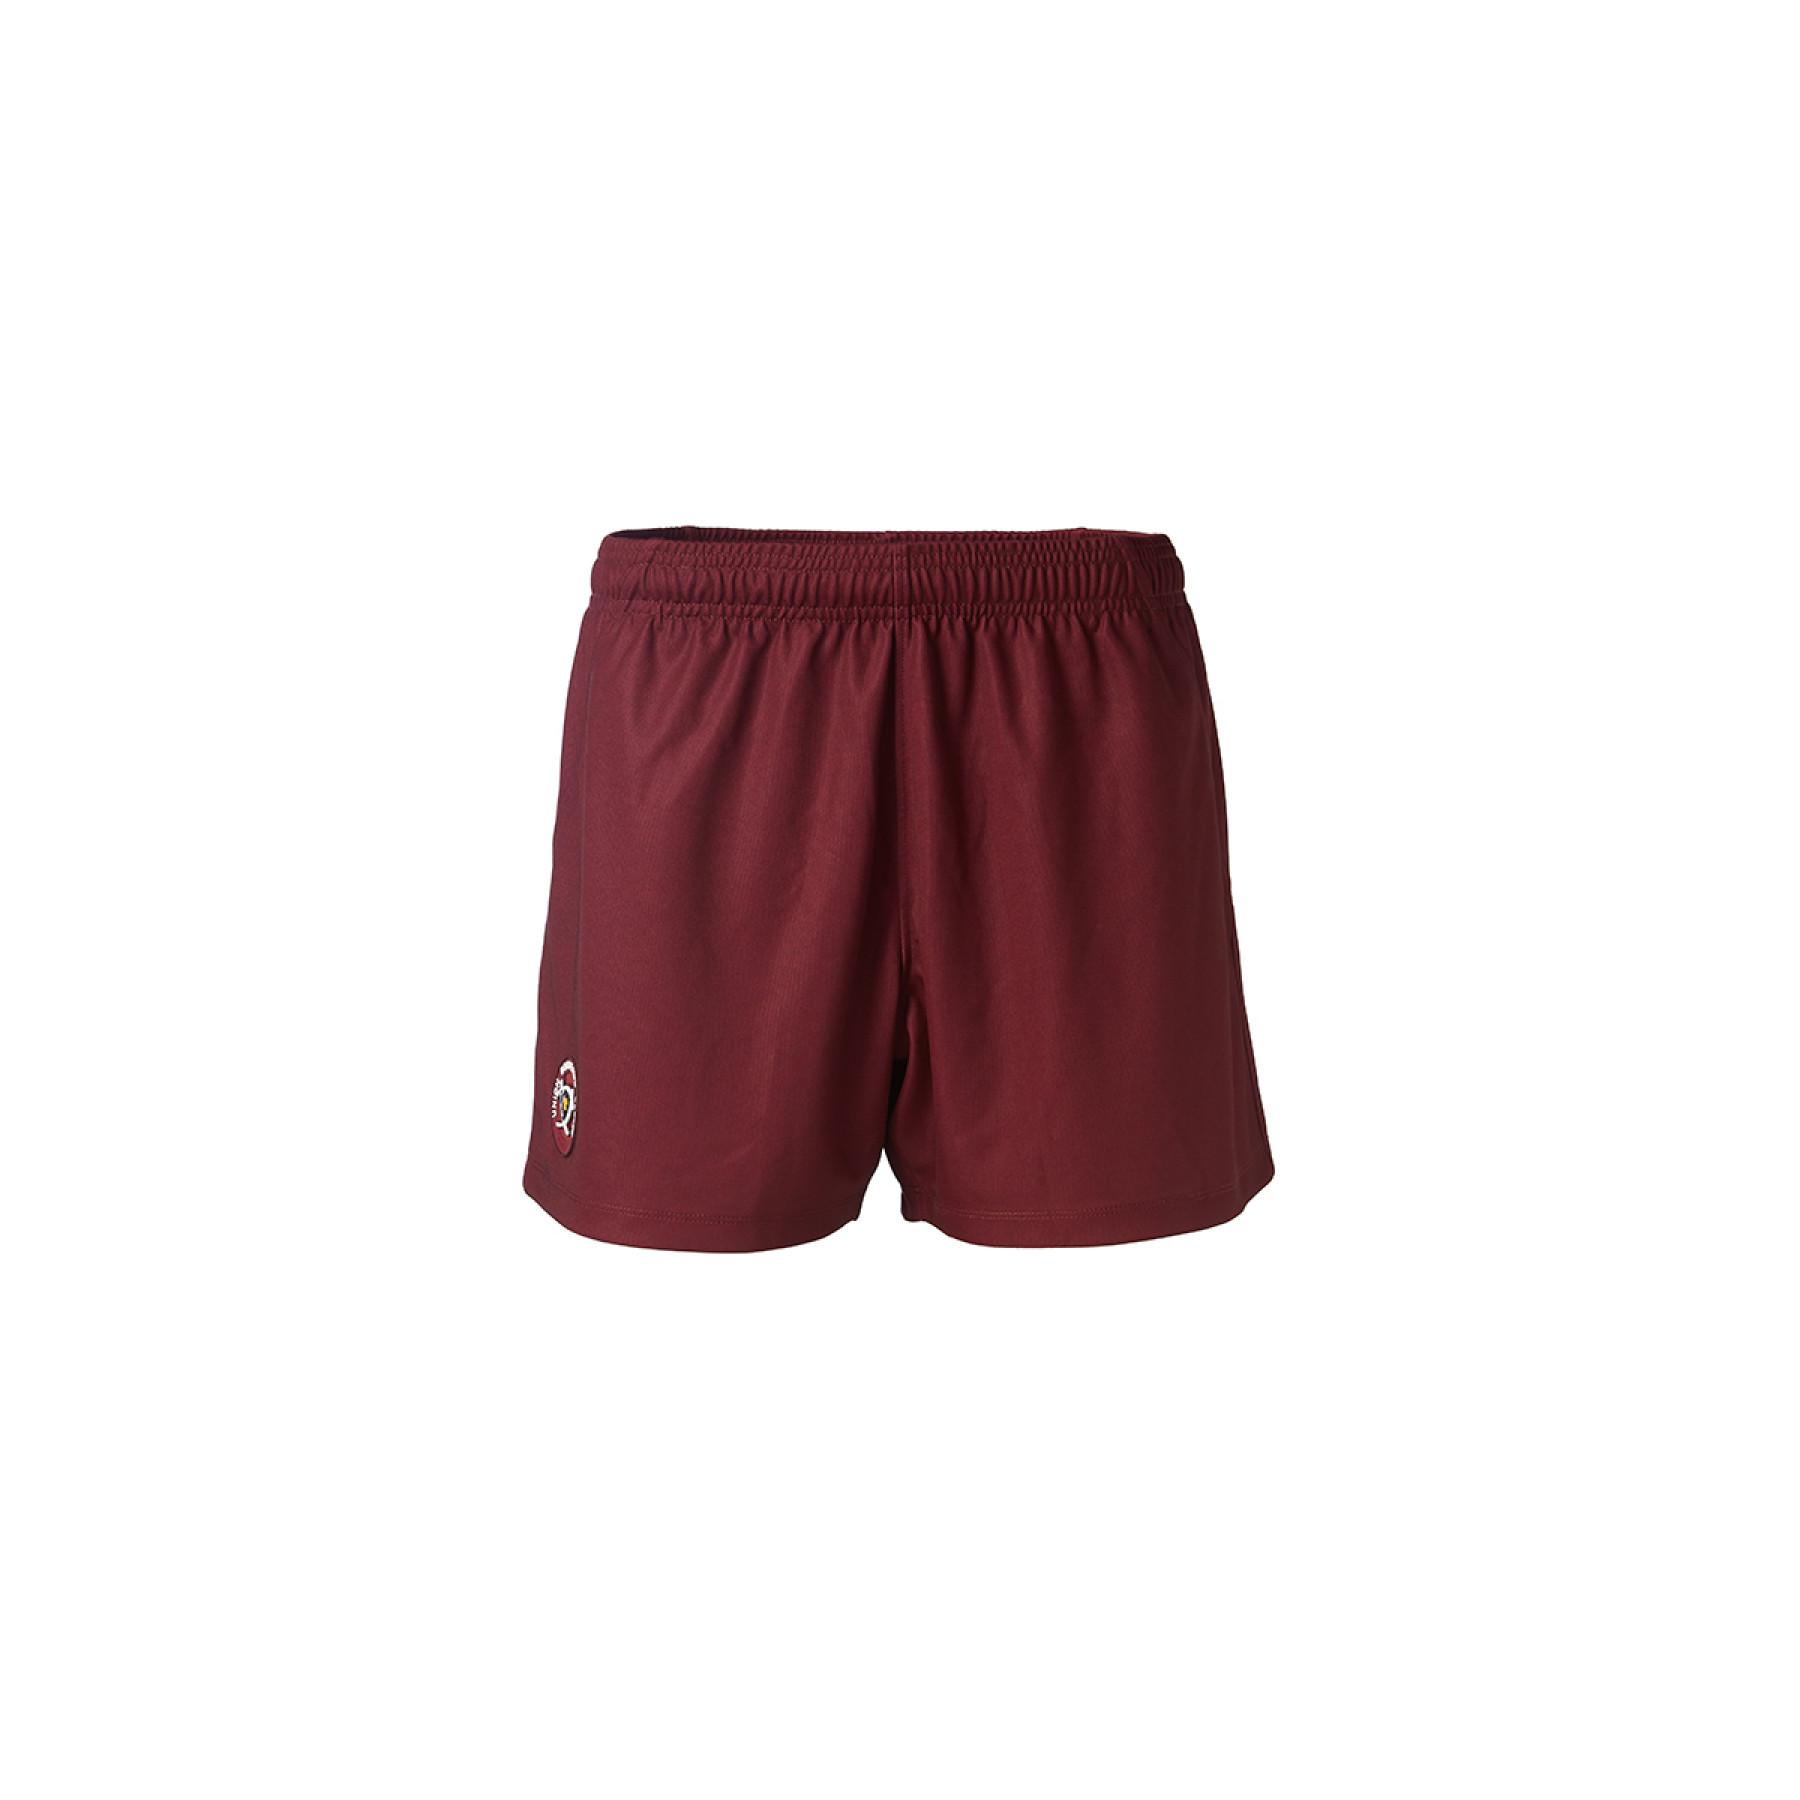 Home shorts Union Bordeaux-Bègles 2020/21